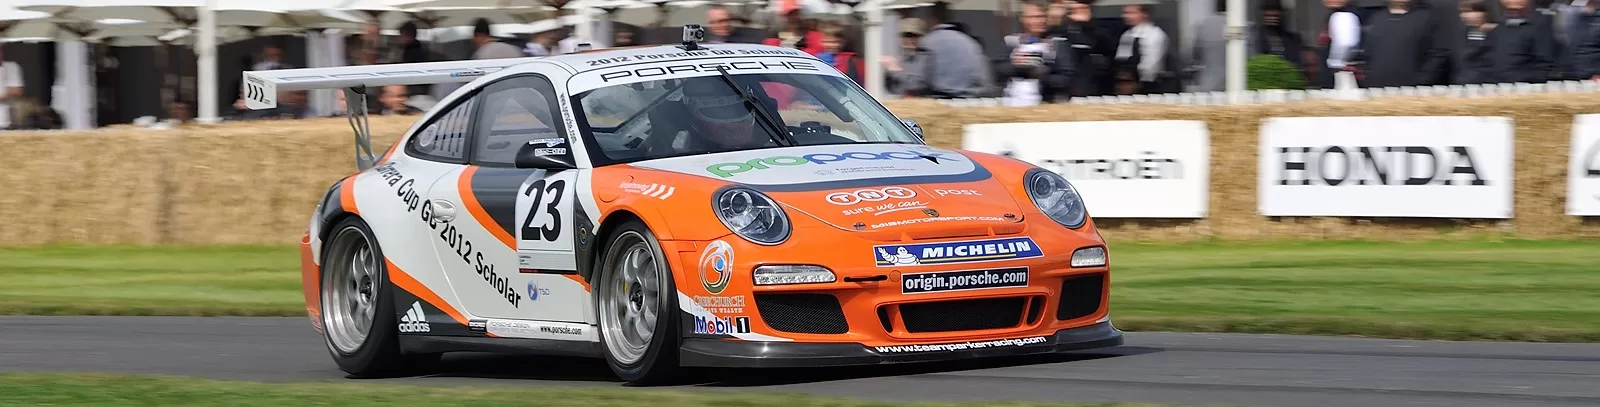 Porsche на фестиваль скорости в Goodwood 2014